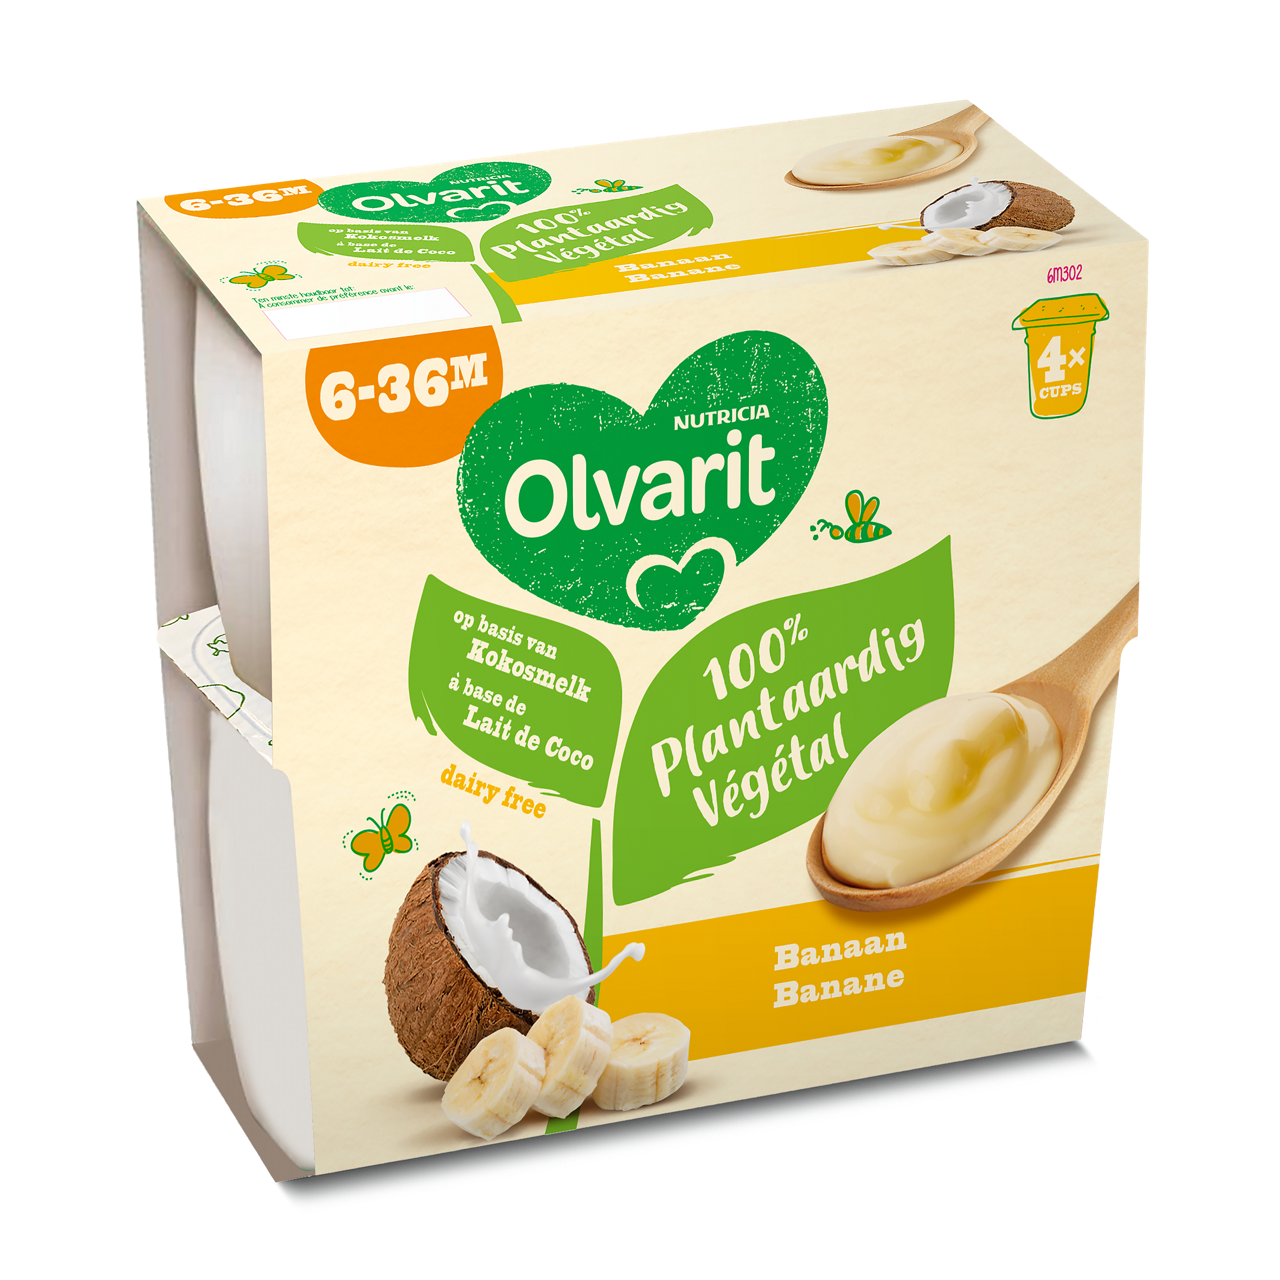 Olvarit, brasse 100% végétal à base de lait de coco. Visitez Olvarit.be pour plus d'informations sur la nutrition de votre bébé et sur les produits Olvarit.